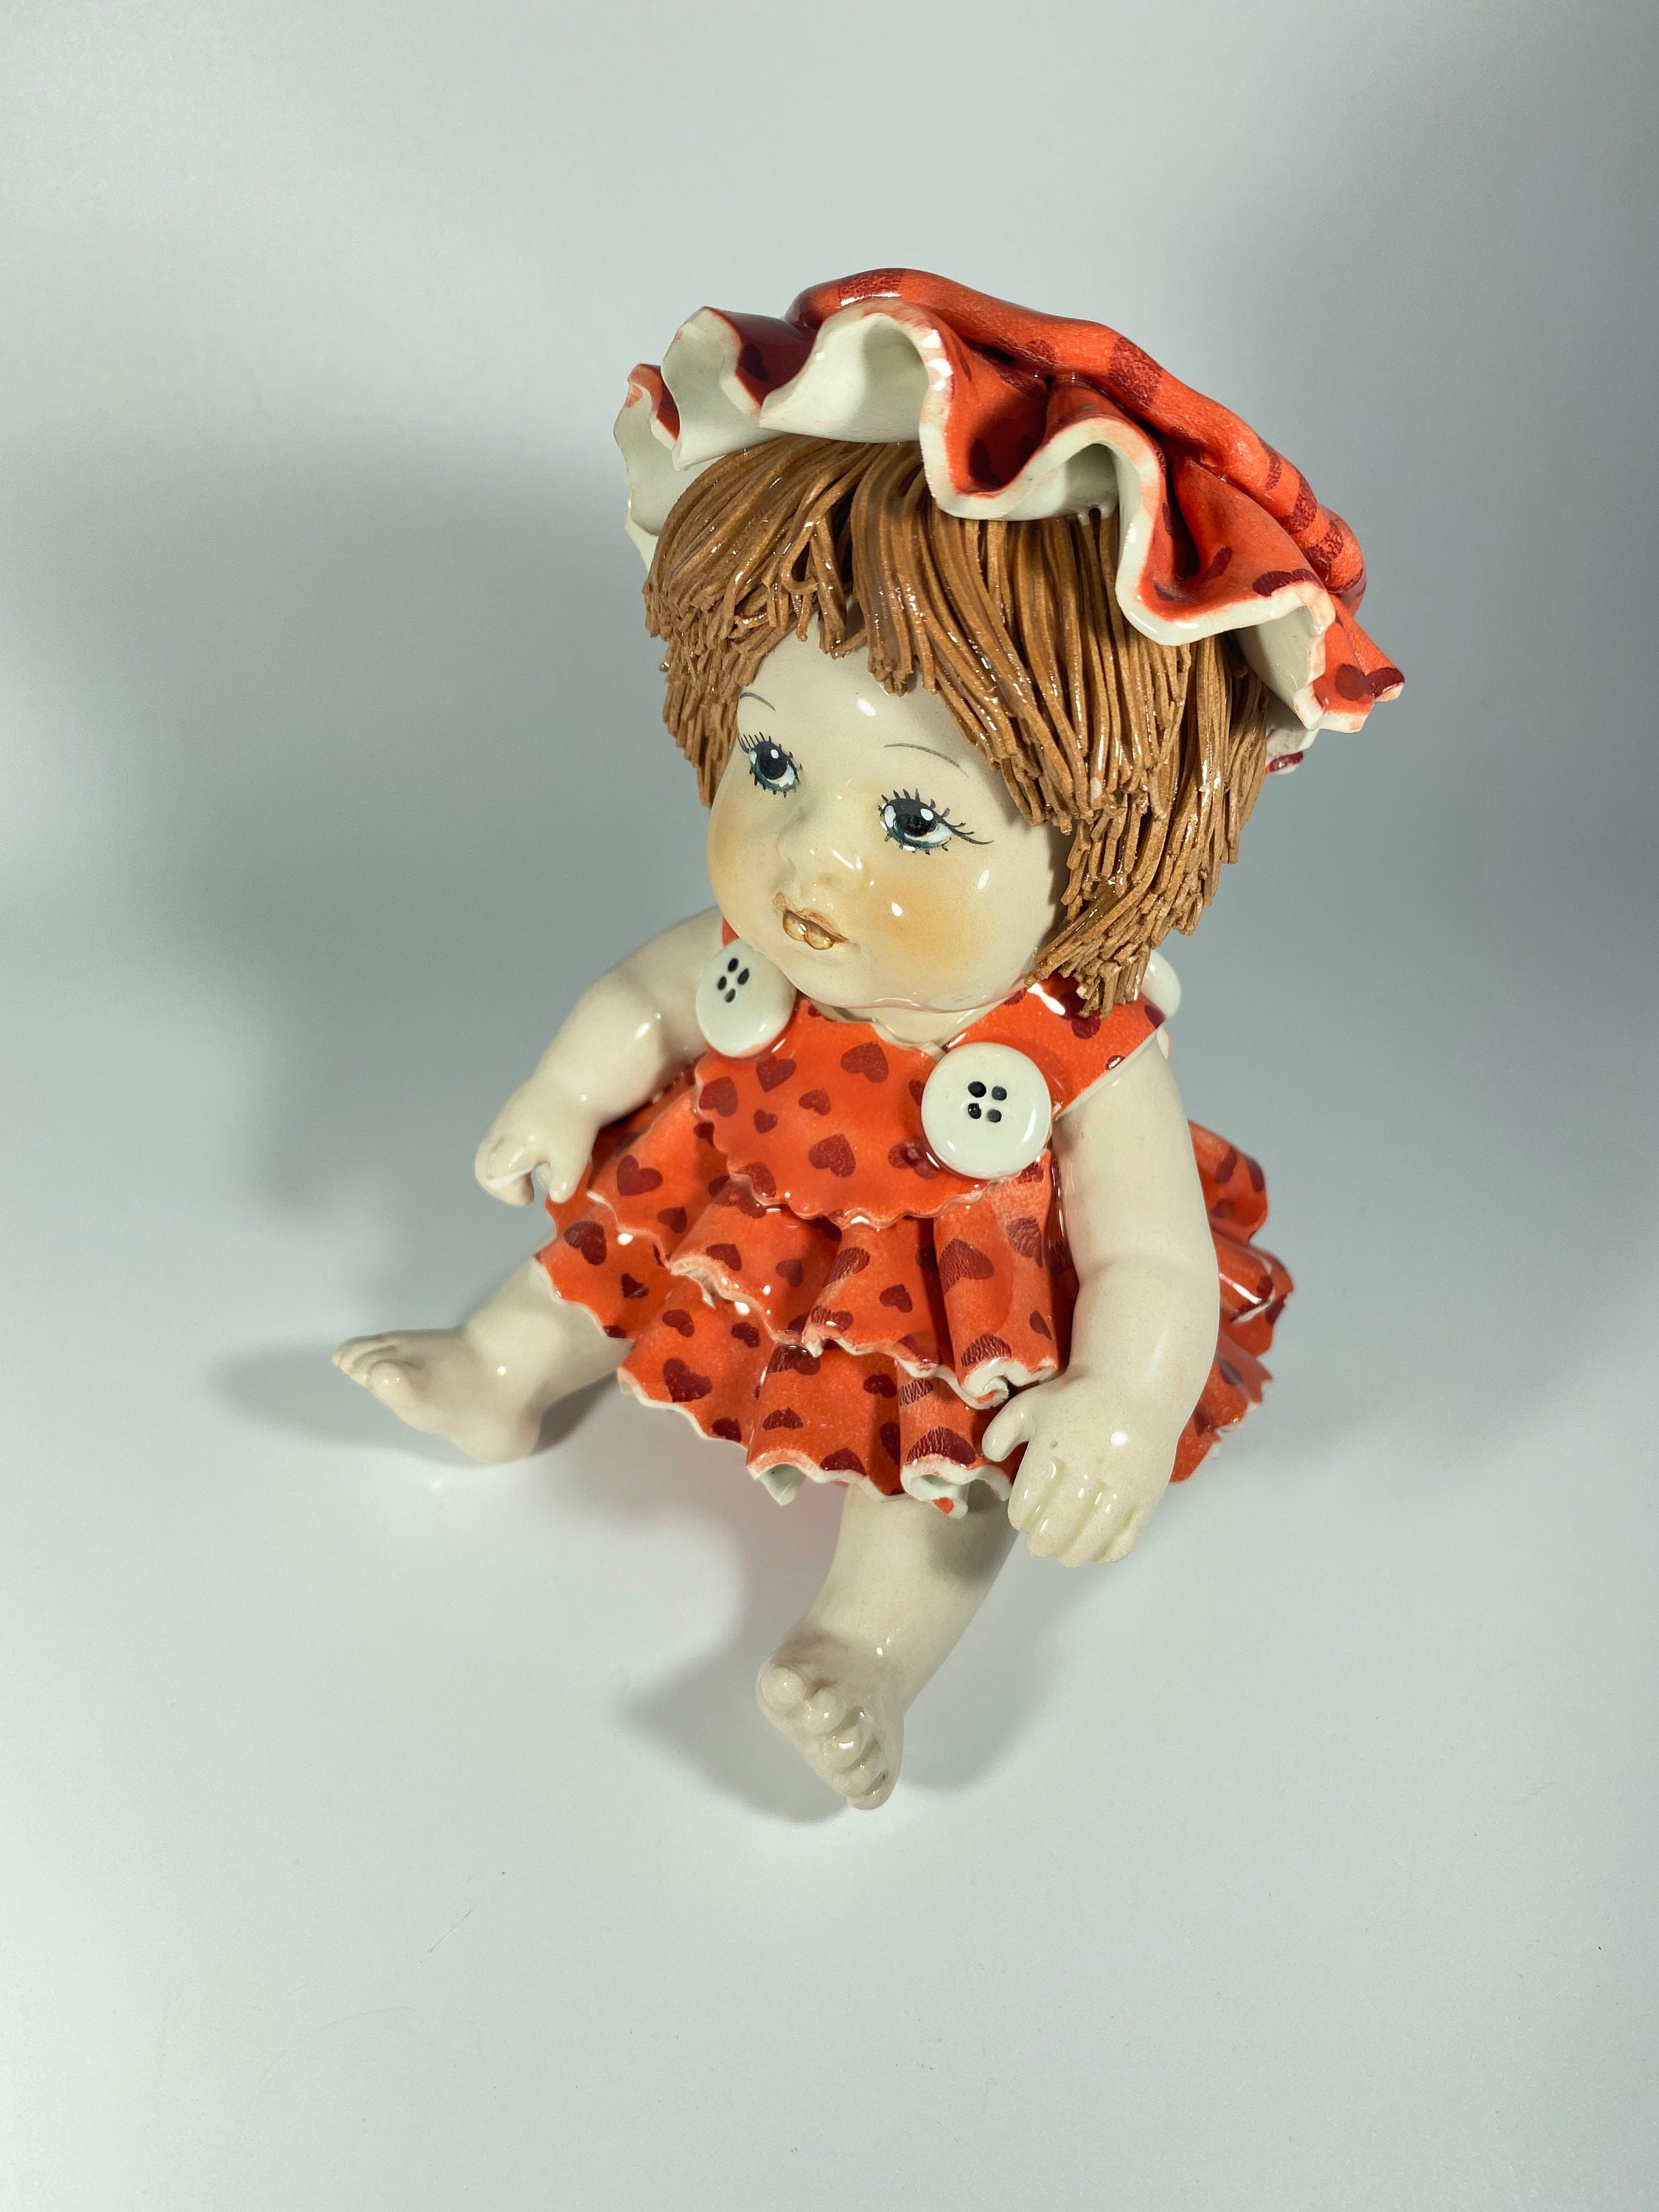 Extremly Rare Lino Zampiva Vintage Little Girl Figurine - Etsy UK